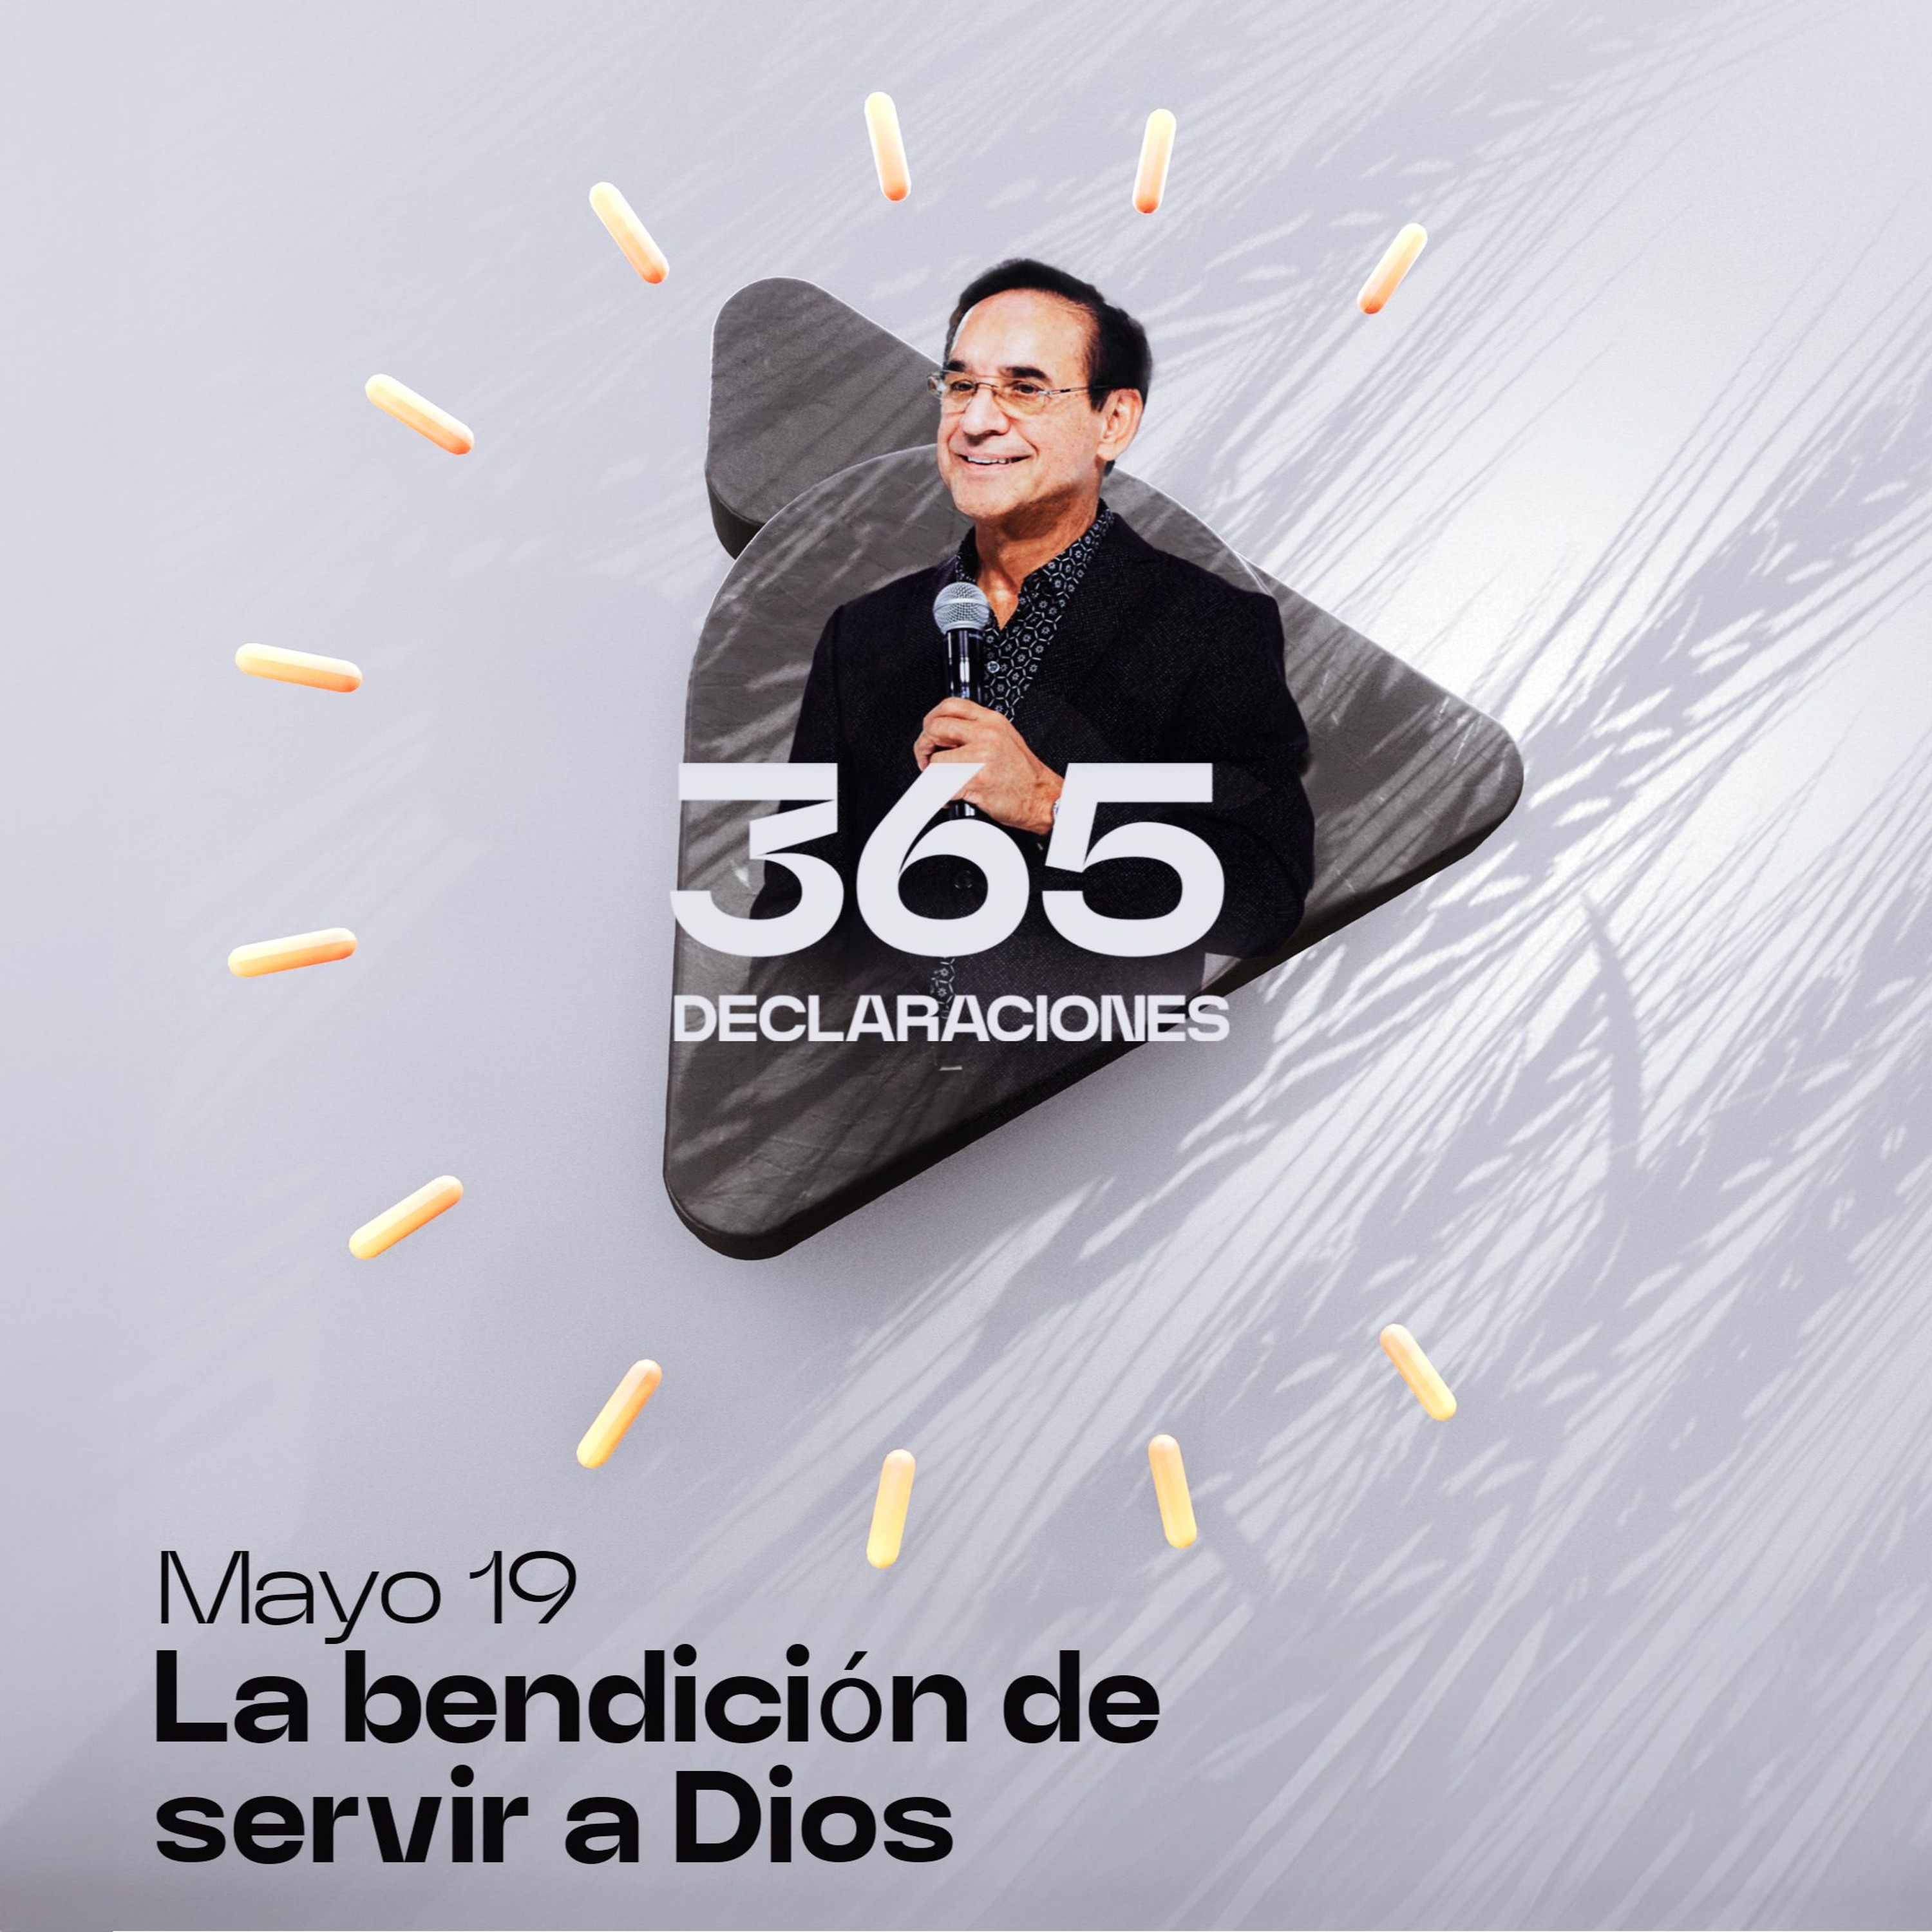 Declaración del día - La bendición de servir a Dios - Mayo 19